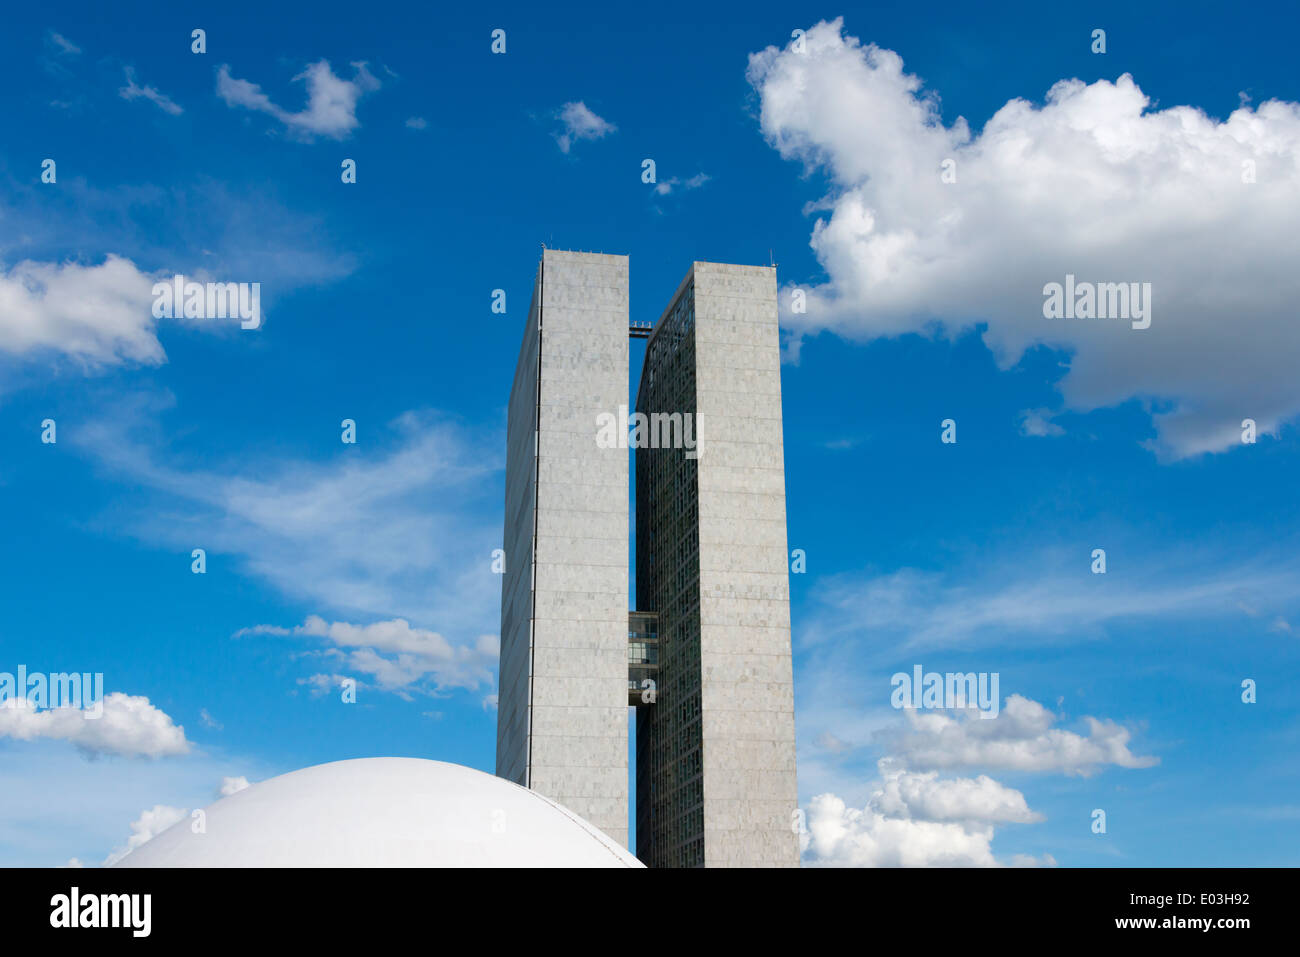 Congrès national complexe conçu par l'architecte Oscar Niemeyer, bombé et le Parlement Sénat office tower, Brasilia, Brésil Banque D'Images